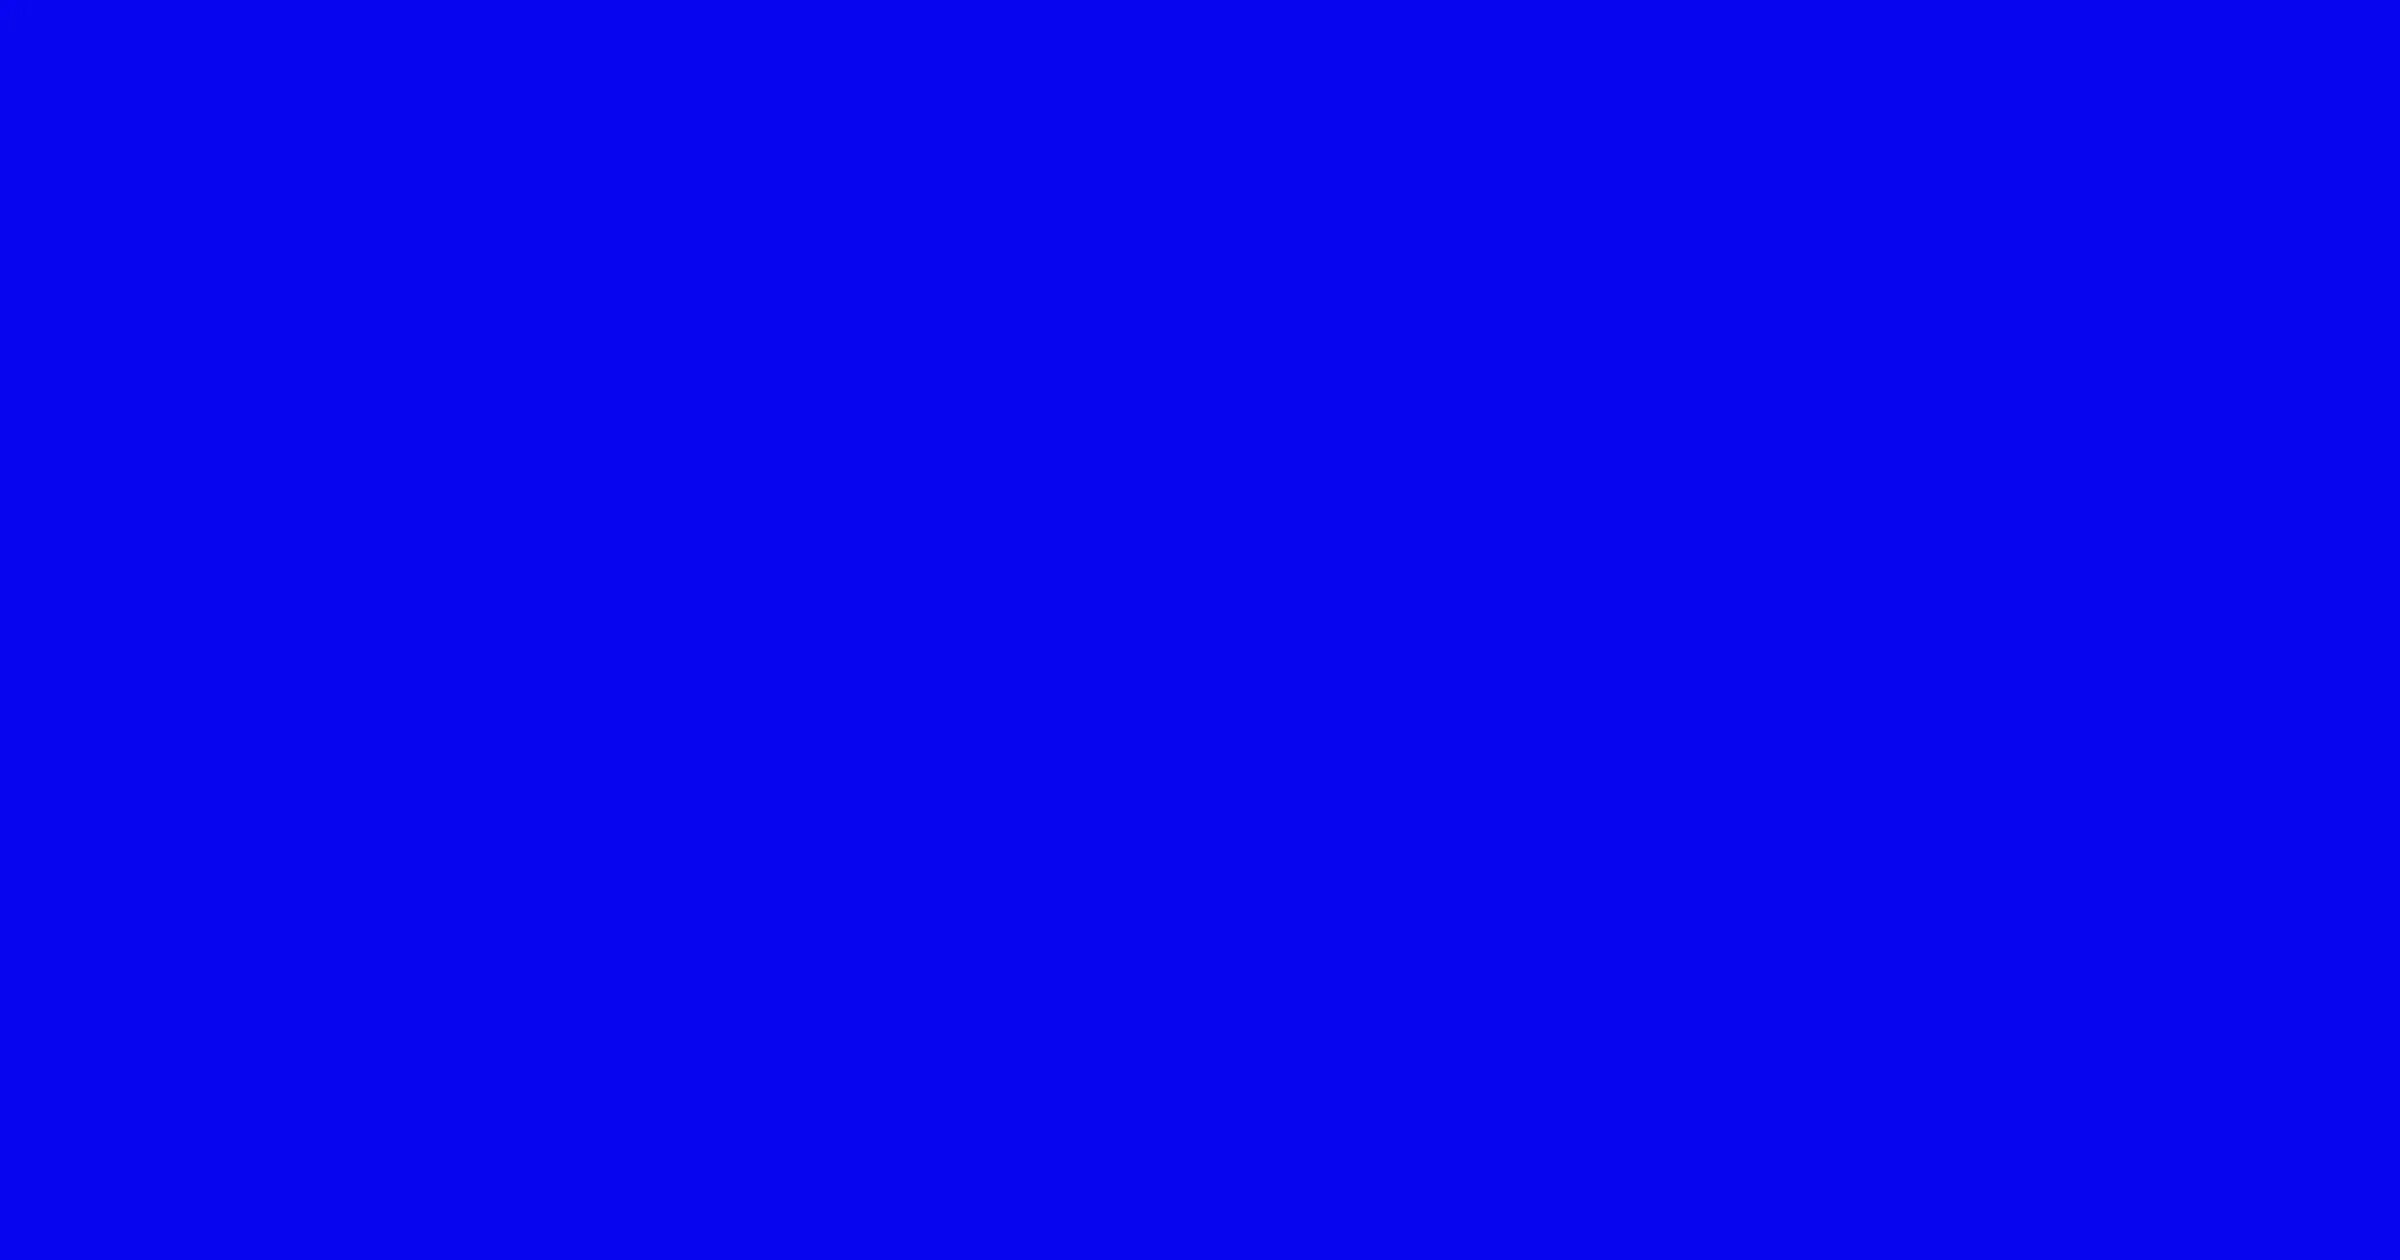 Сплошной синий цвет. Синий фон без ничего. Синий цвет фон. Ярко синий квадрат. Очень яркий голубой цвет